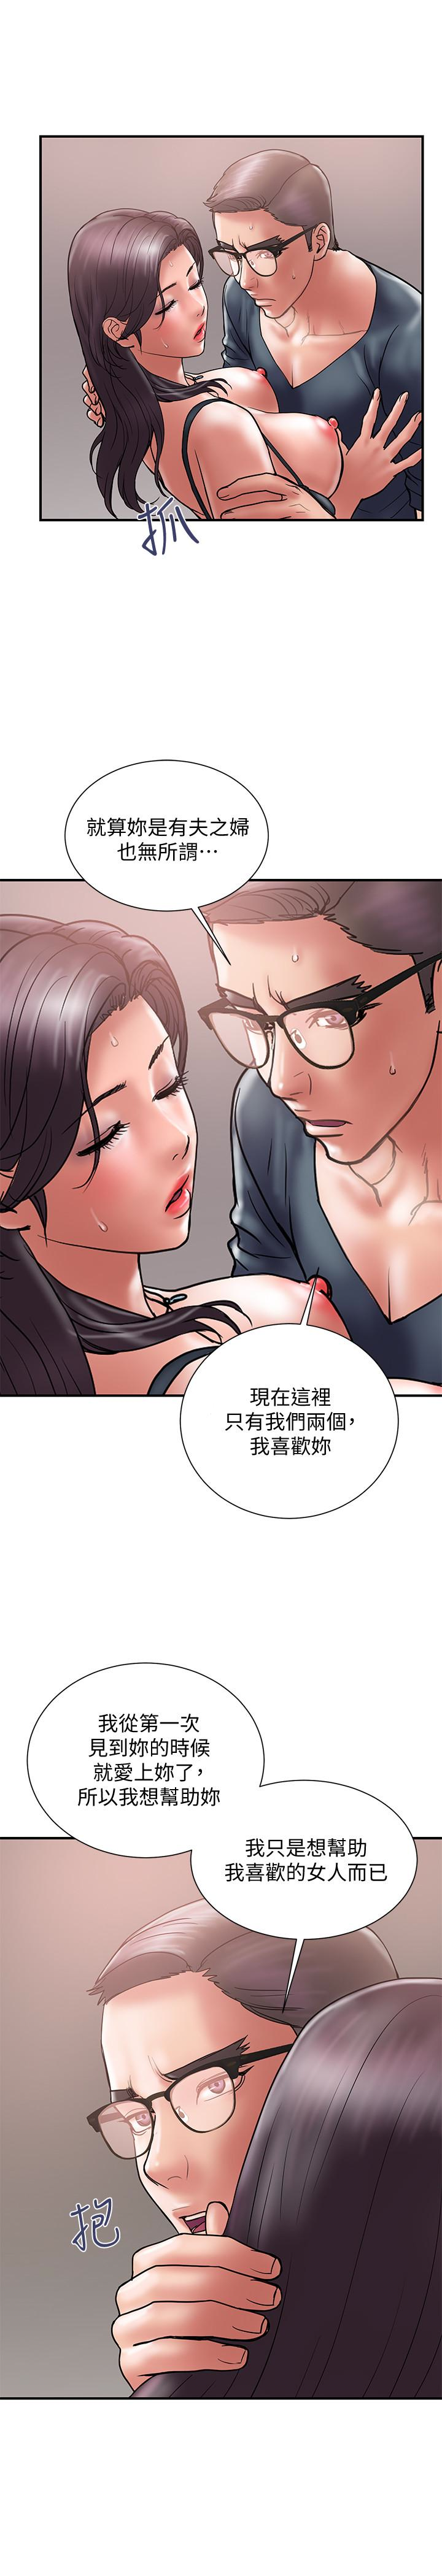 韩国污漫画 計劃出軌 第18话-就算你是有夫之妇也无所谓 13